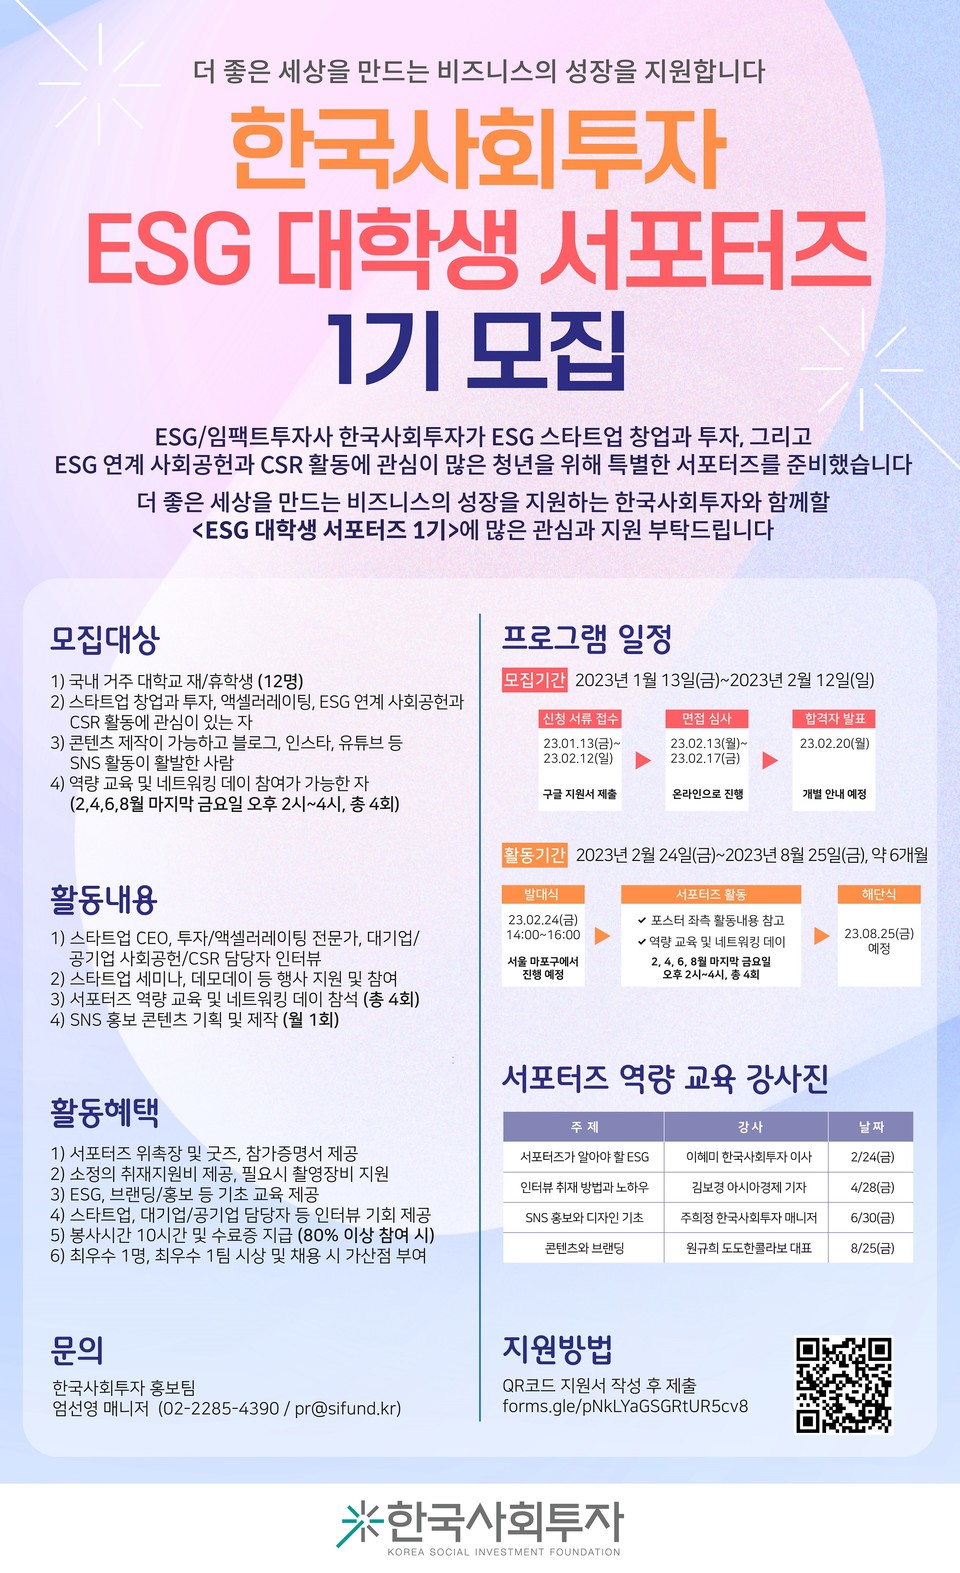 ‘한국사회투자 ESG 서포터즈 1기’ 모집 포스터./출처=한국사회투자